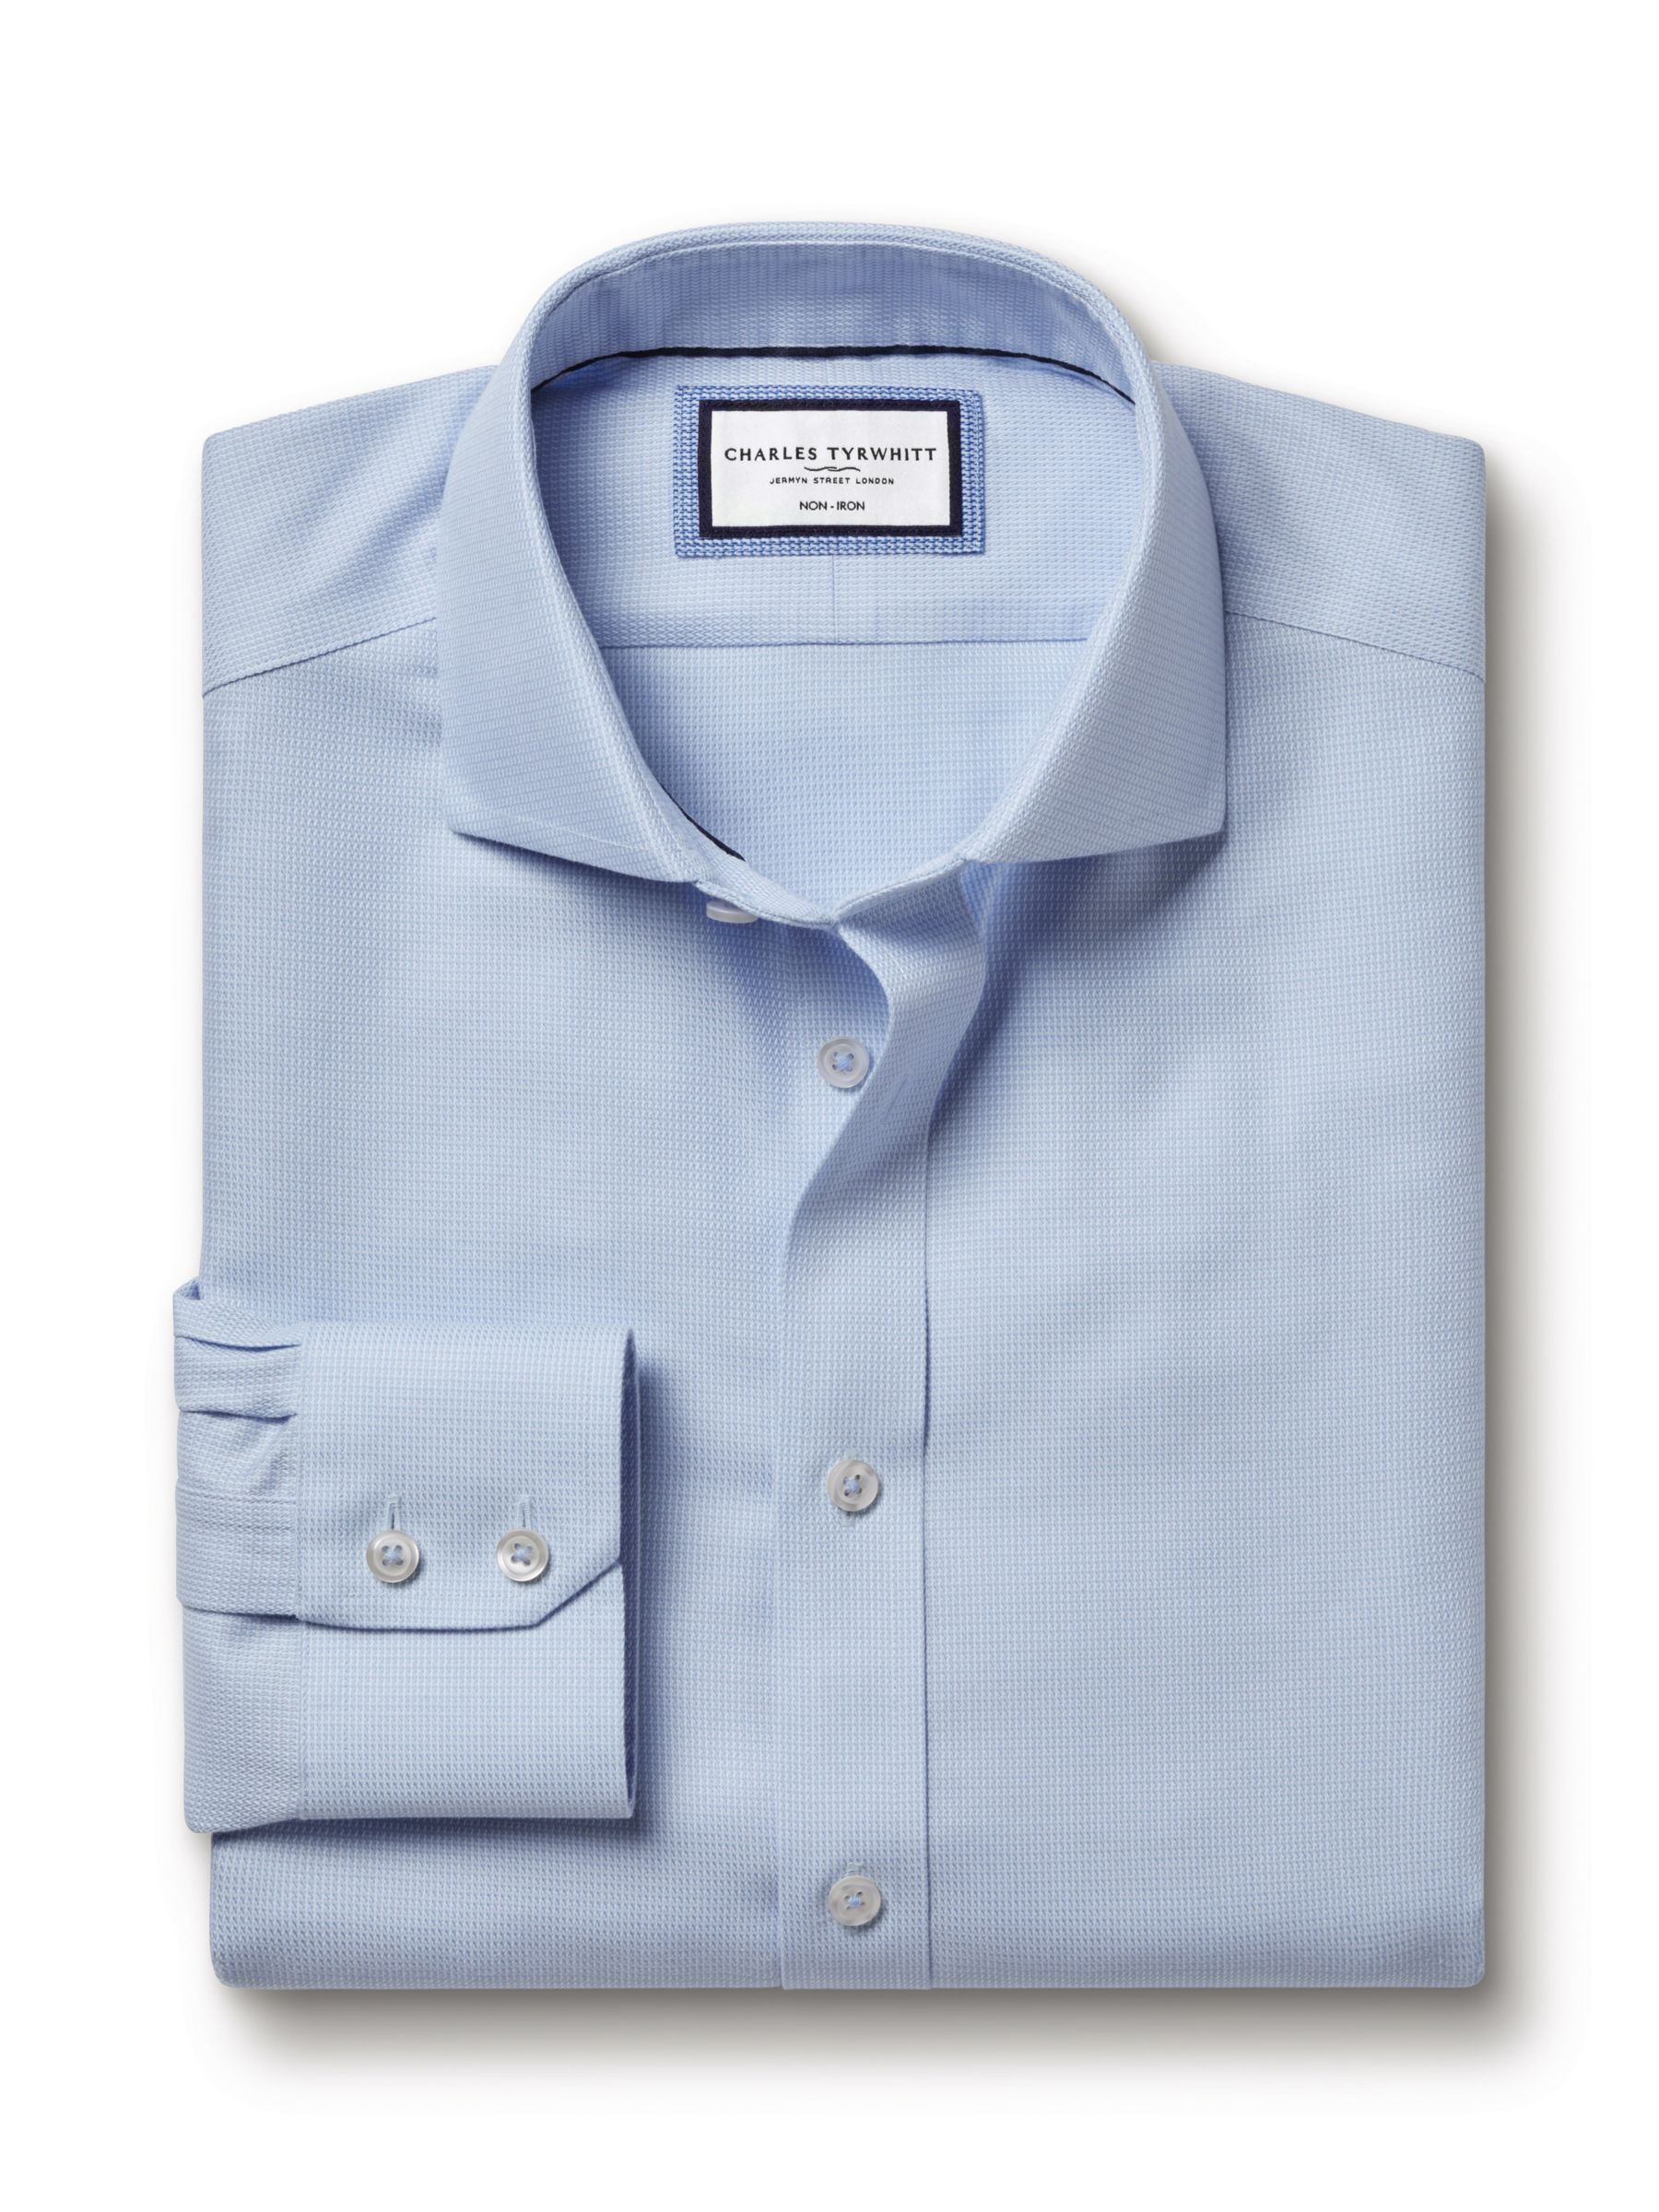 Charles Tyrwhitt Non-Iron Mayfair Textured Dobby Weave Shirt, Light Blue, 14.5